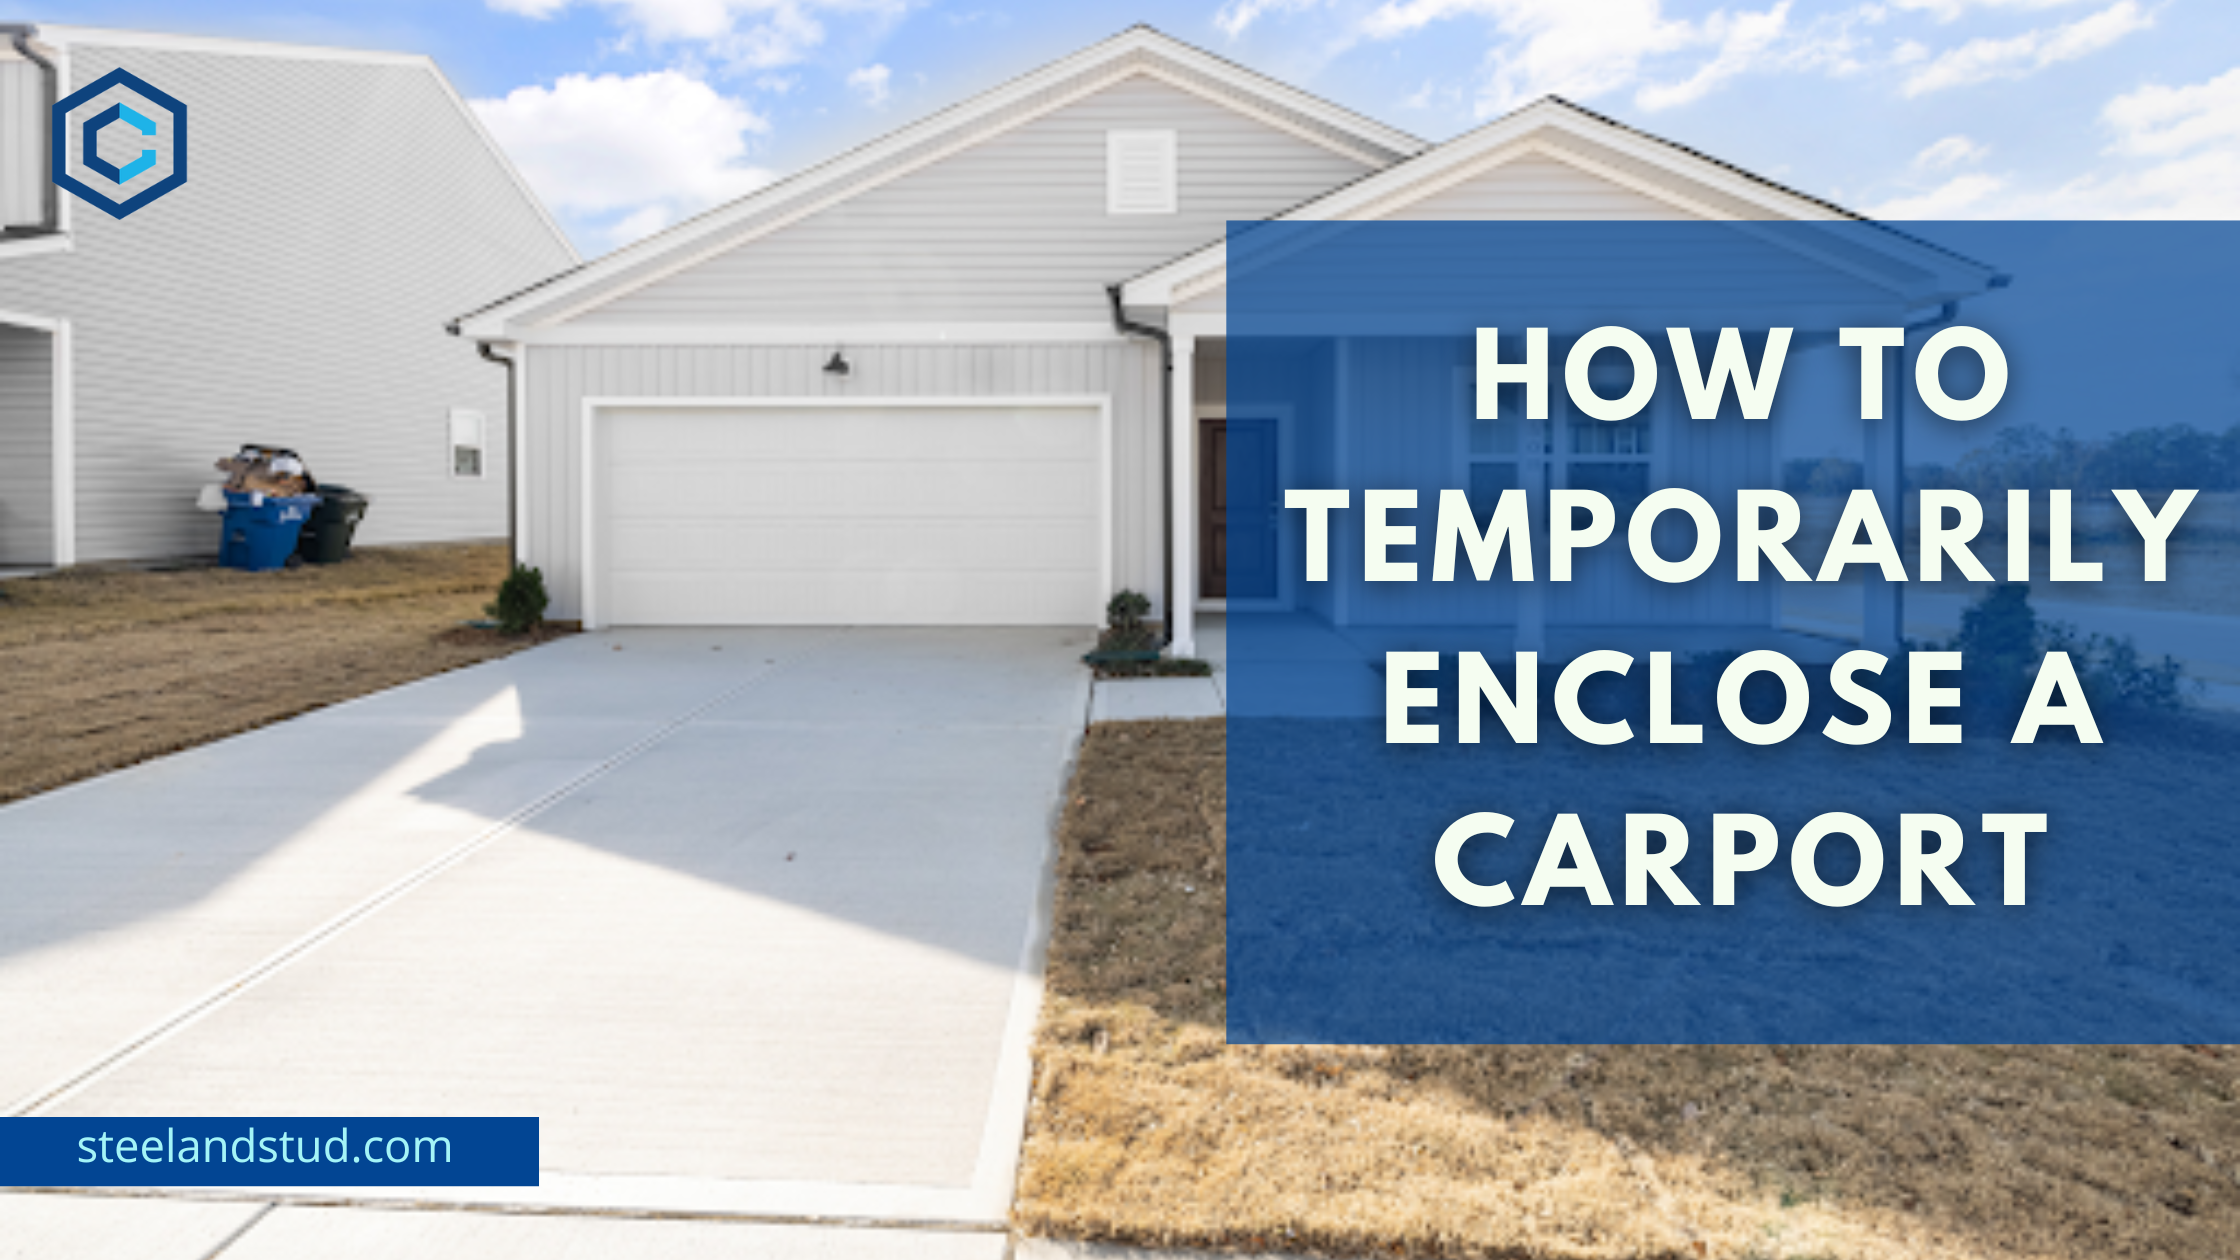 How to Temporarily Enclose a Carport